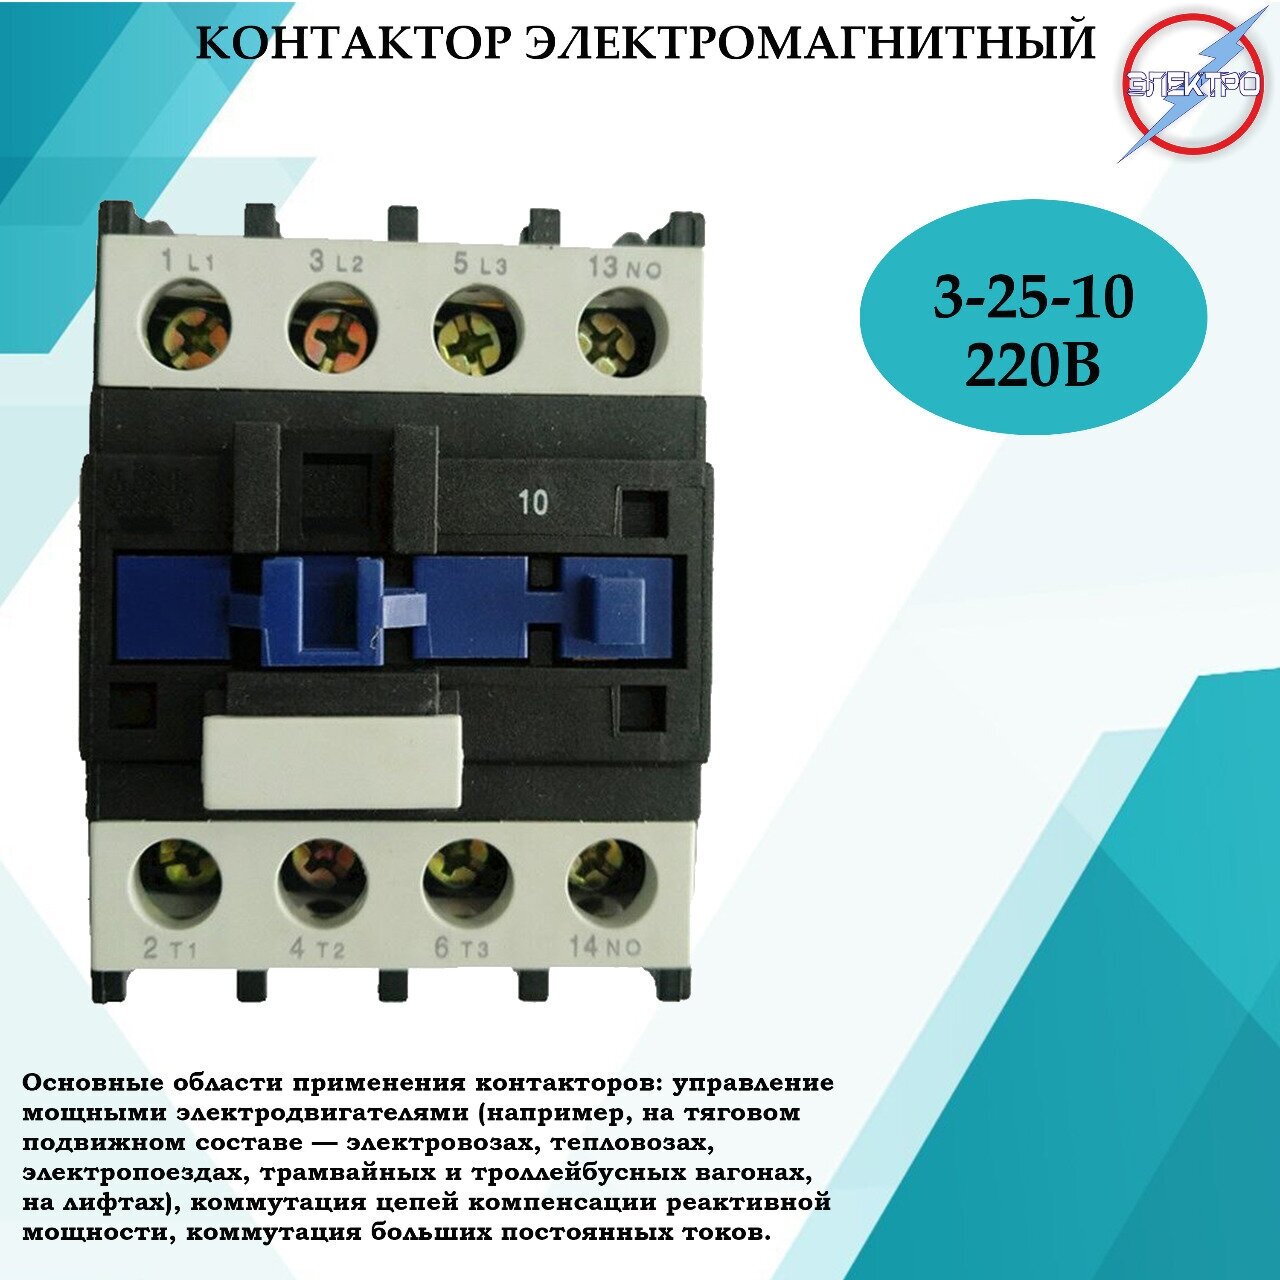 Контактор электромагнитный КМ 3 - 25 - 10 - 220В